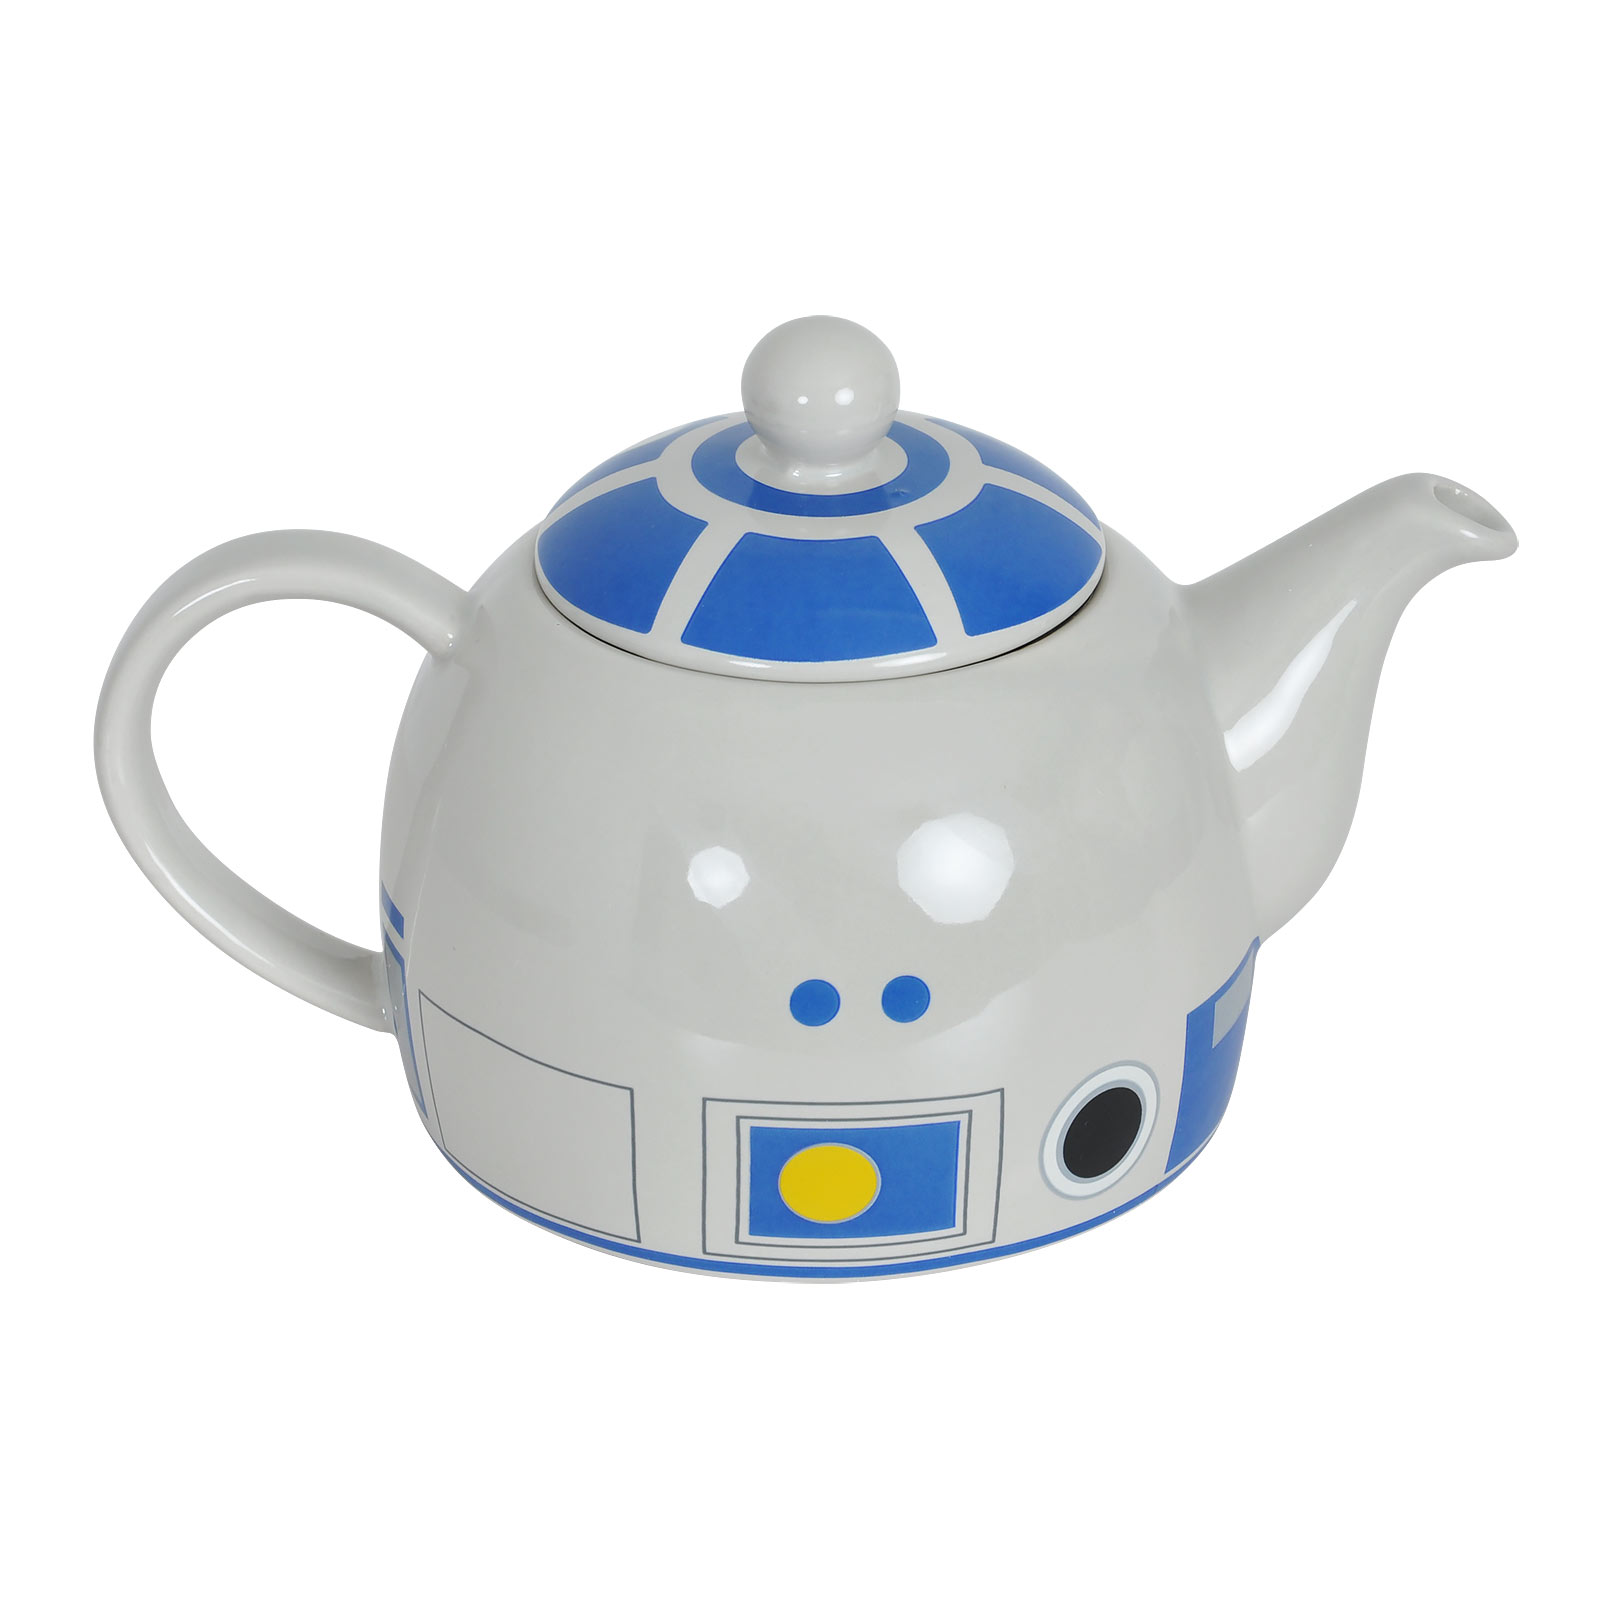 Star Wars - R2-D2 teapot